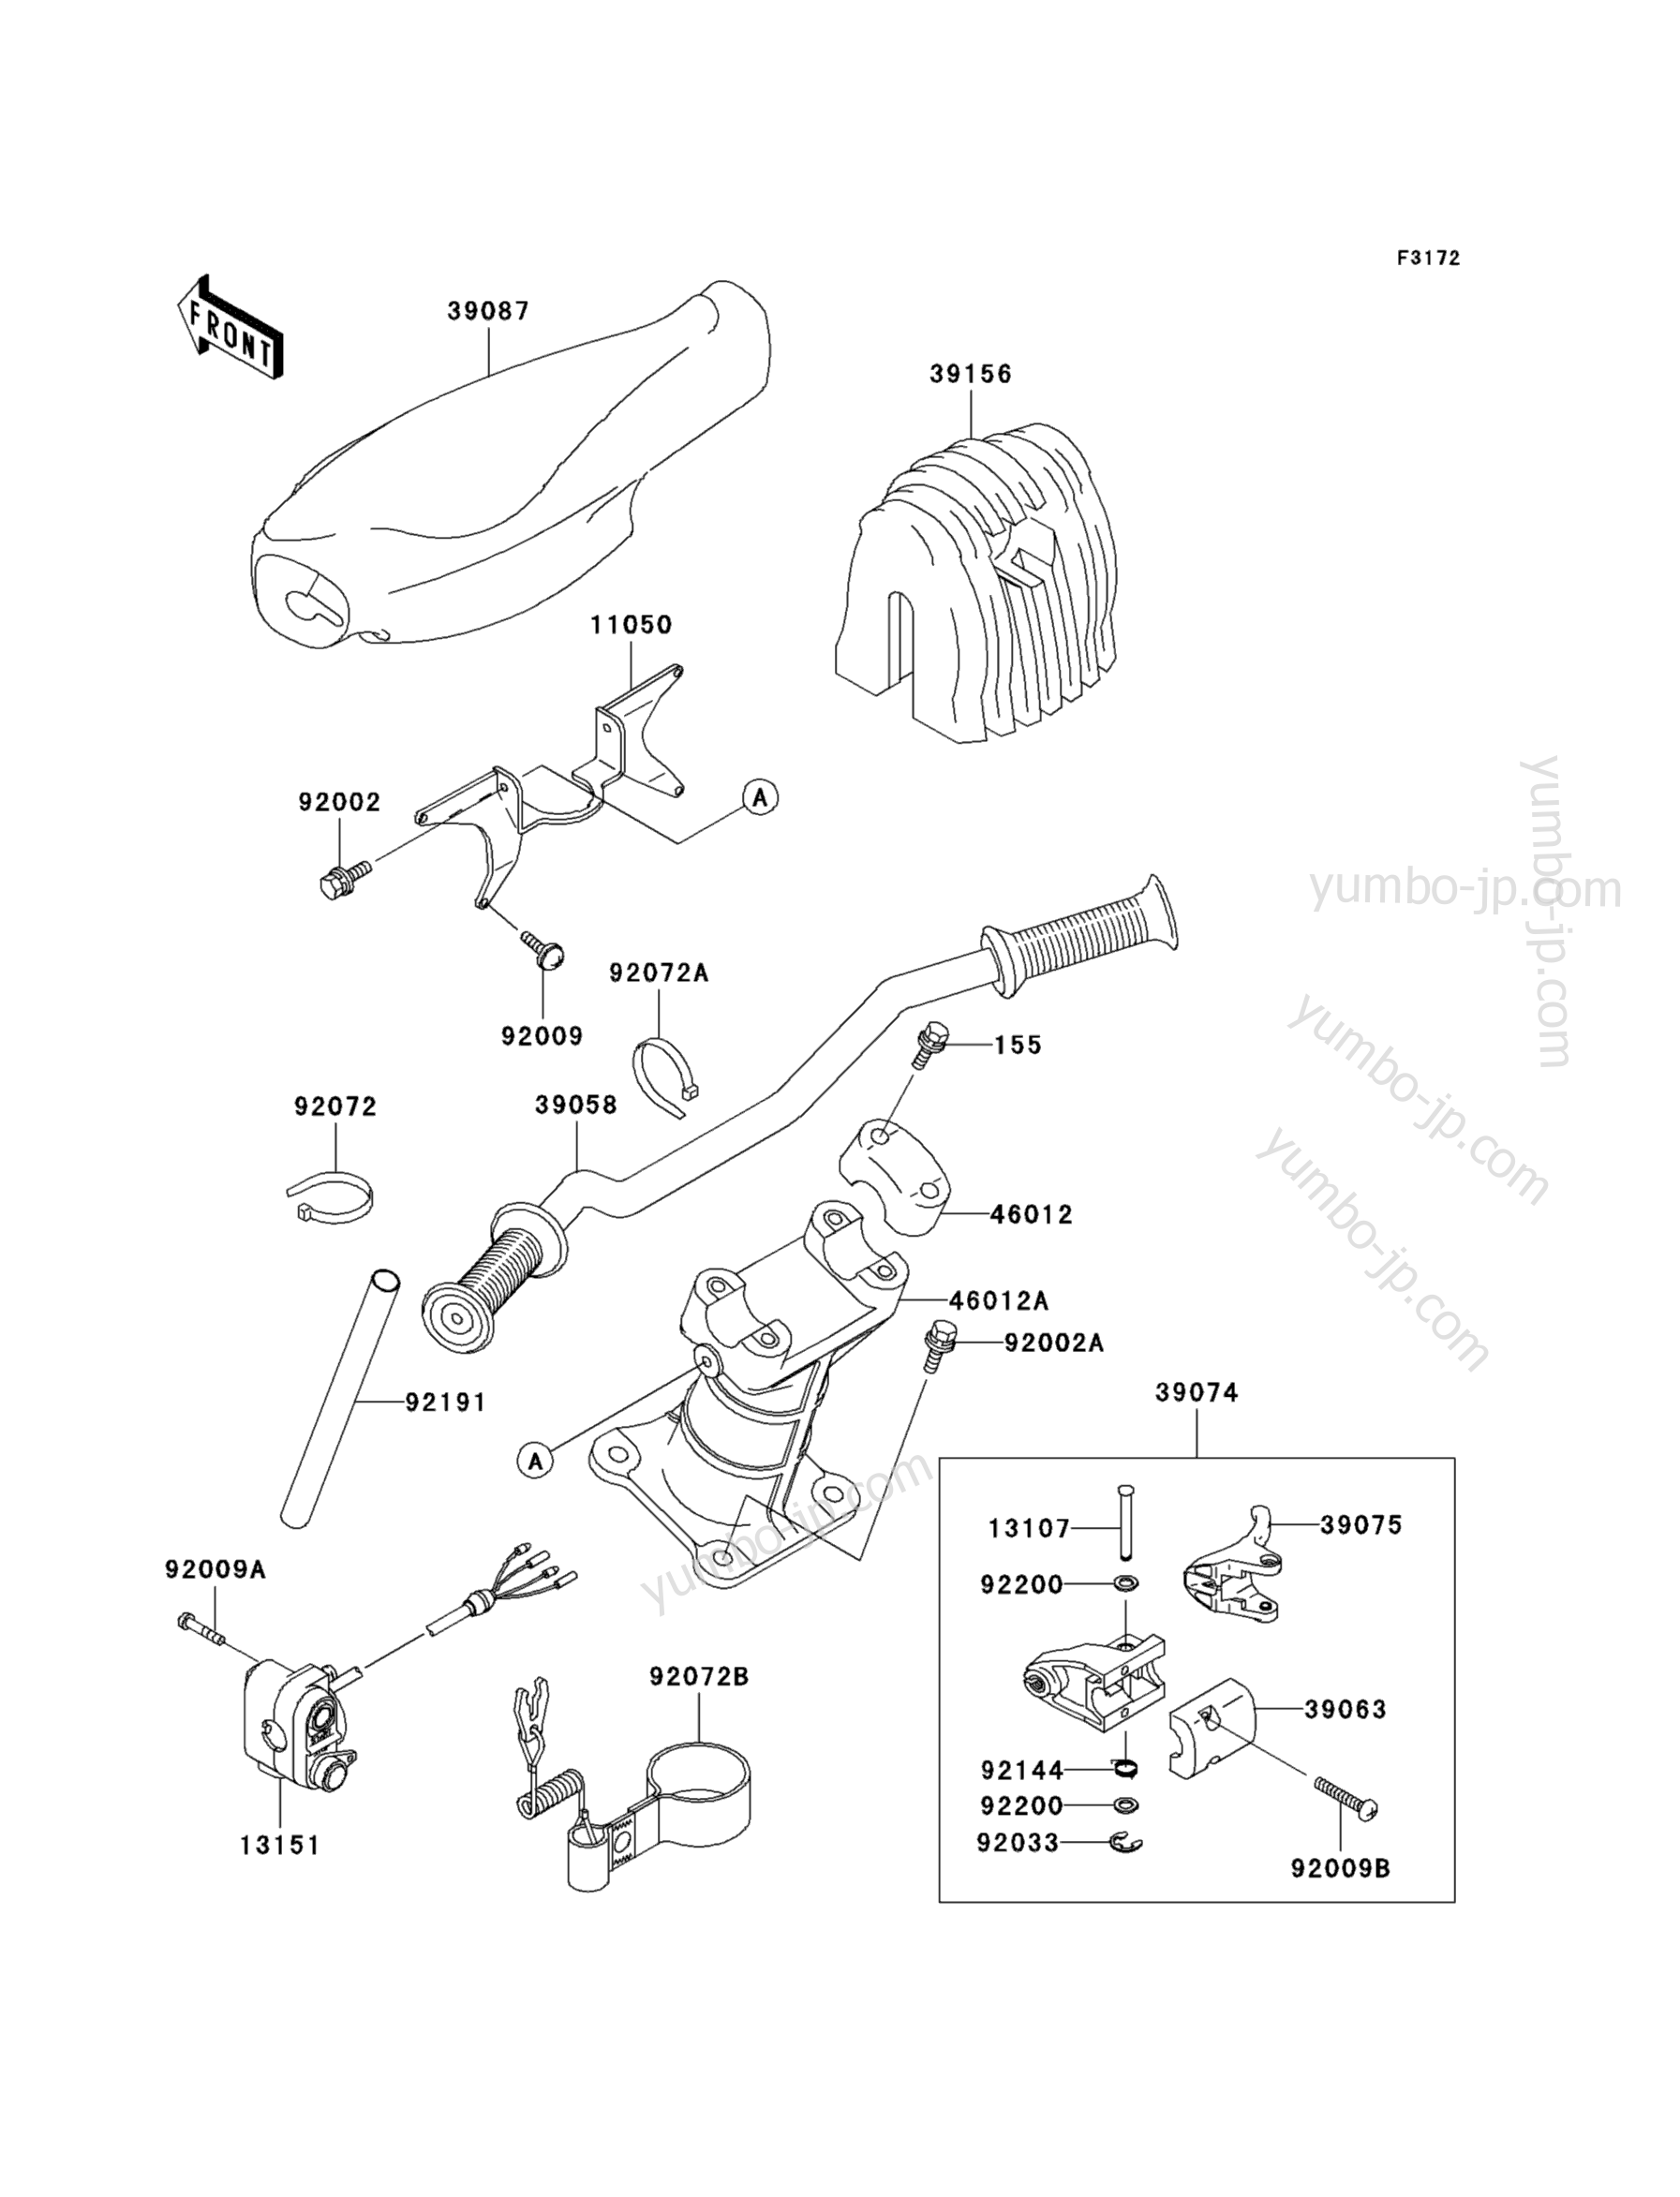 Румпель (рукоятка управления) для гидроциклов KAWASAKI JET SKI 900 STS (JT900-B4) 2002 г.